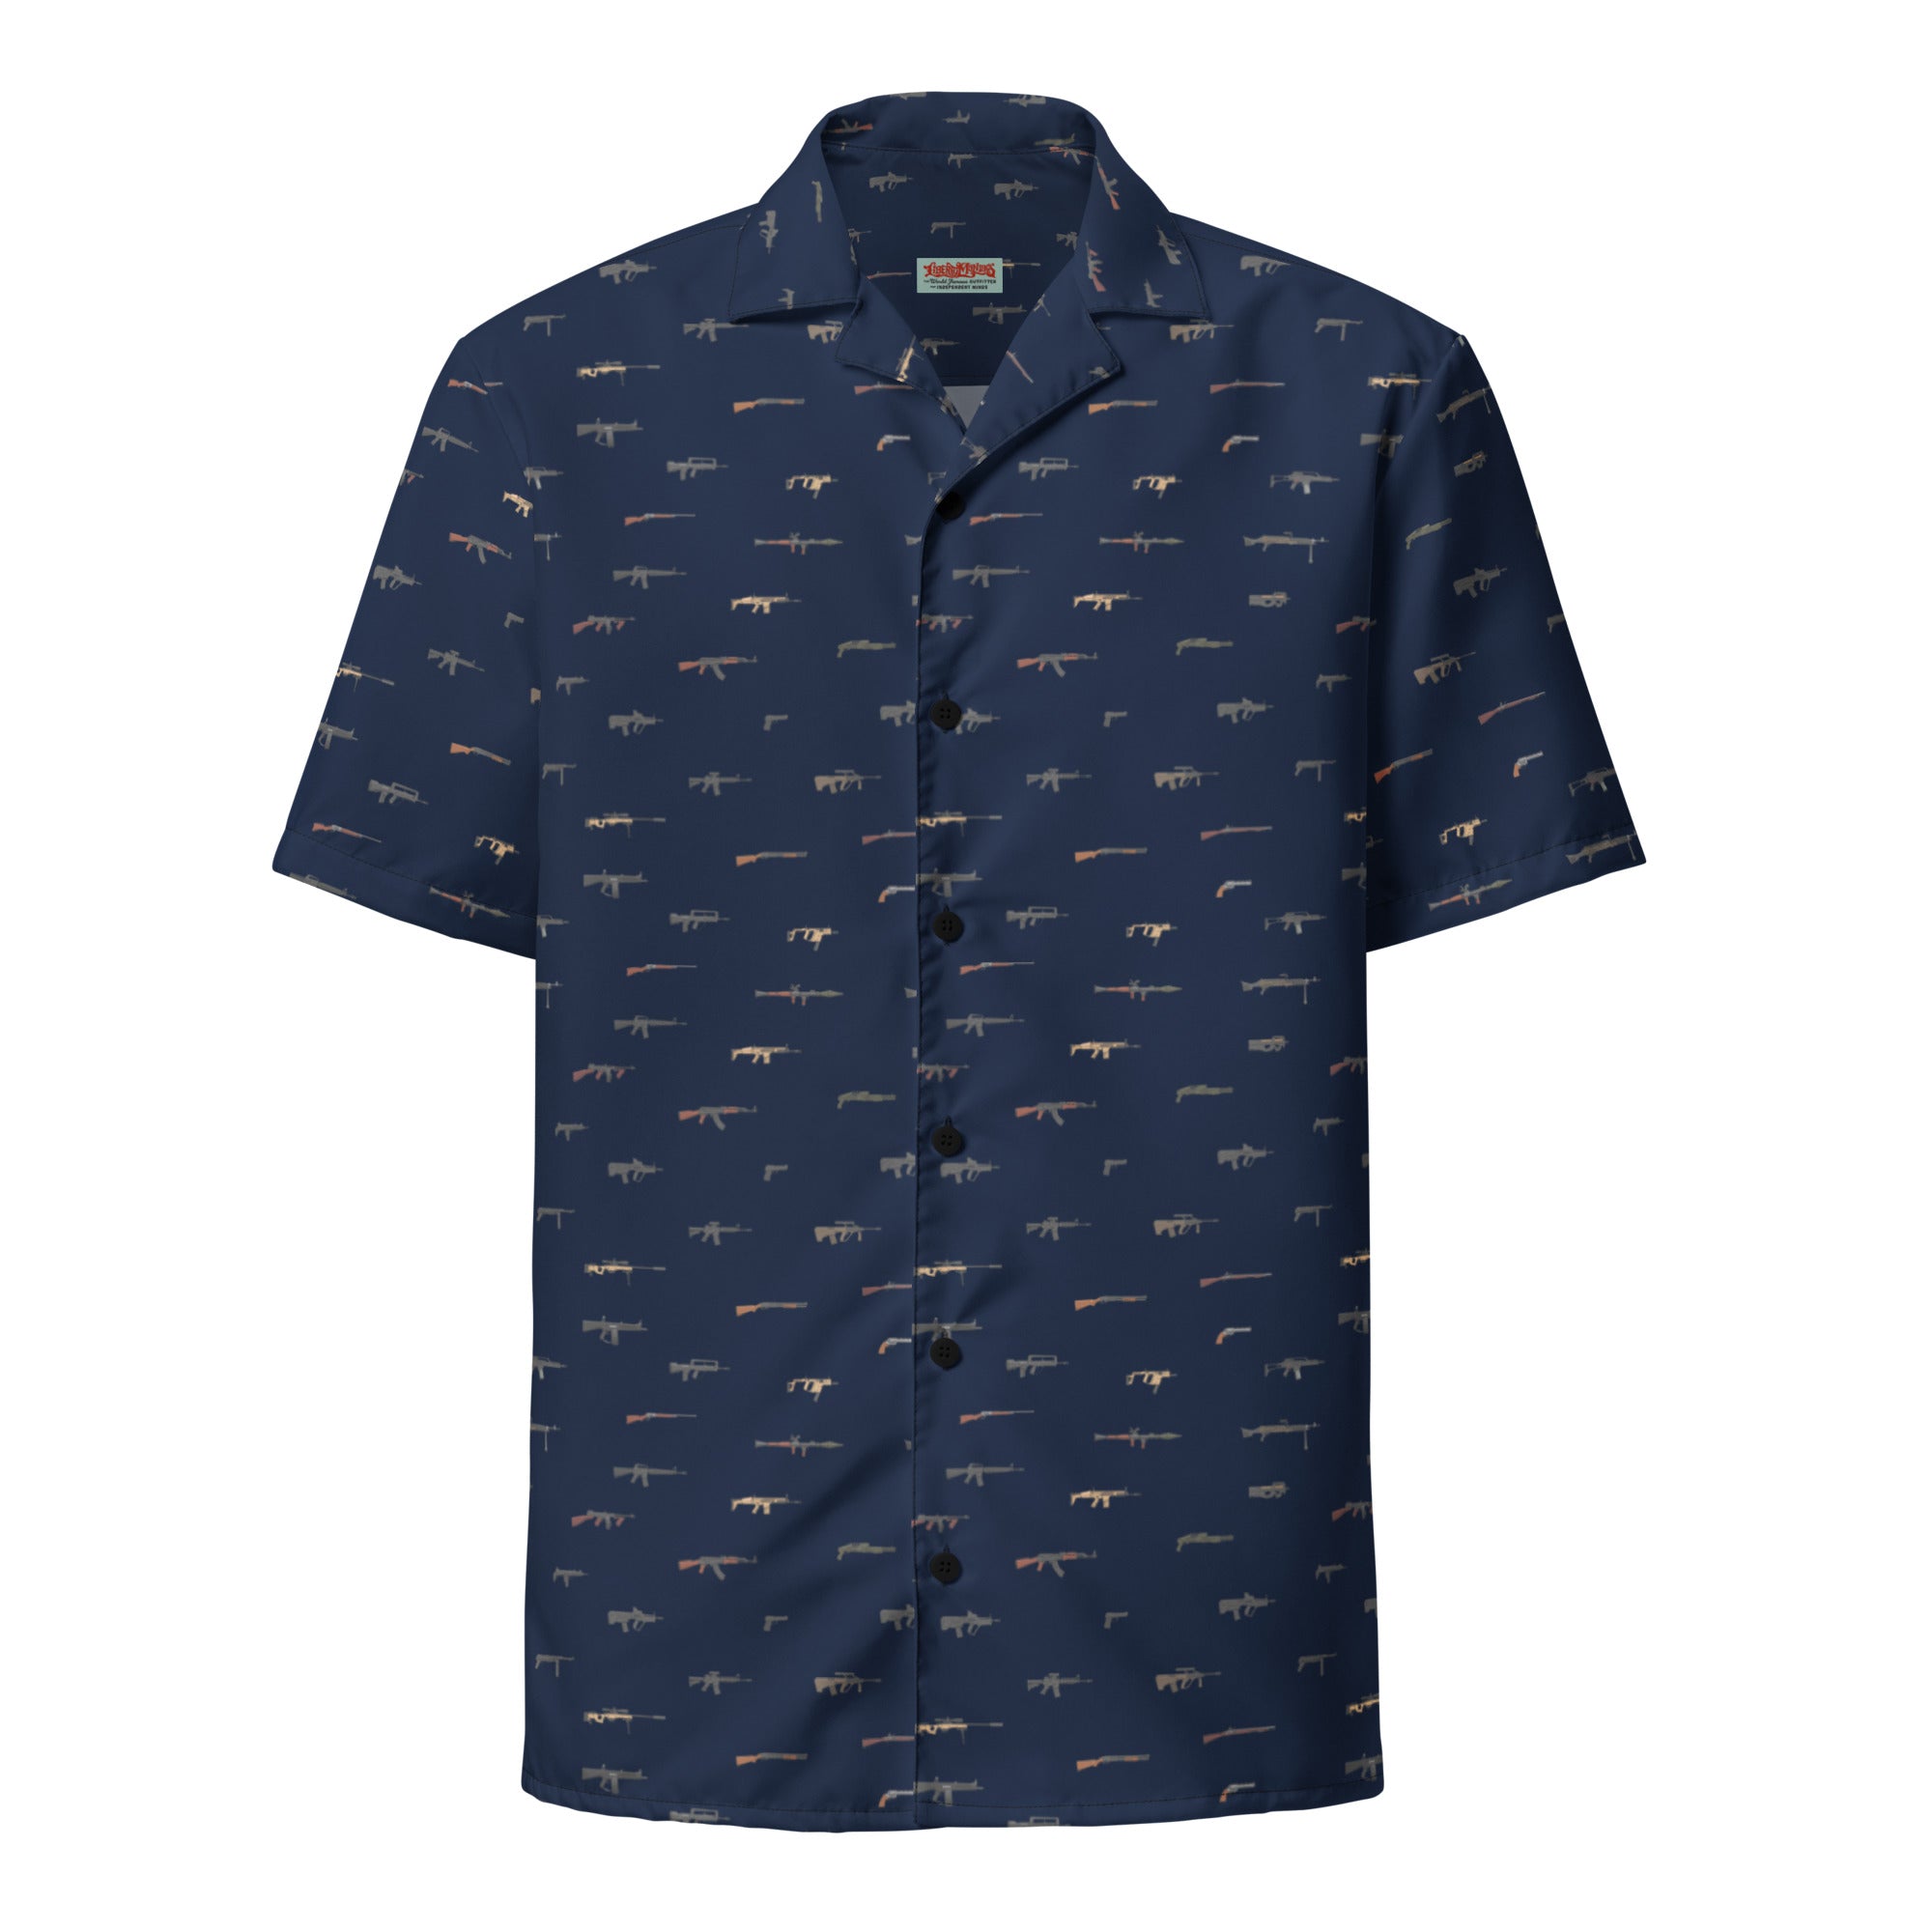 Arsenal Navy Blue Button-Up Shirt